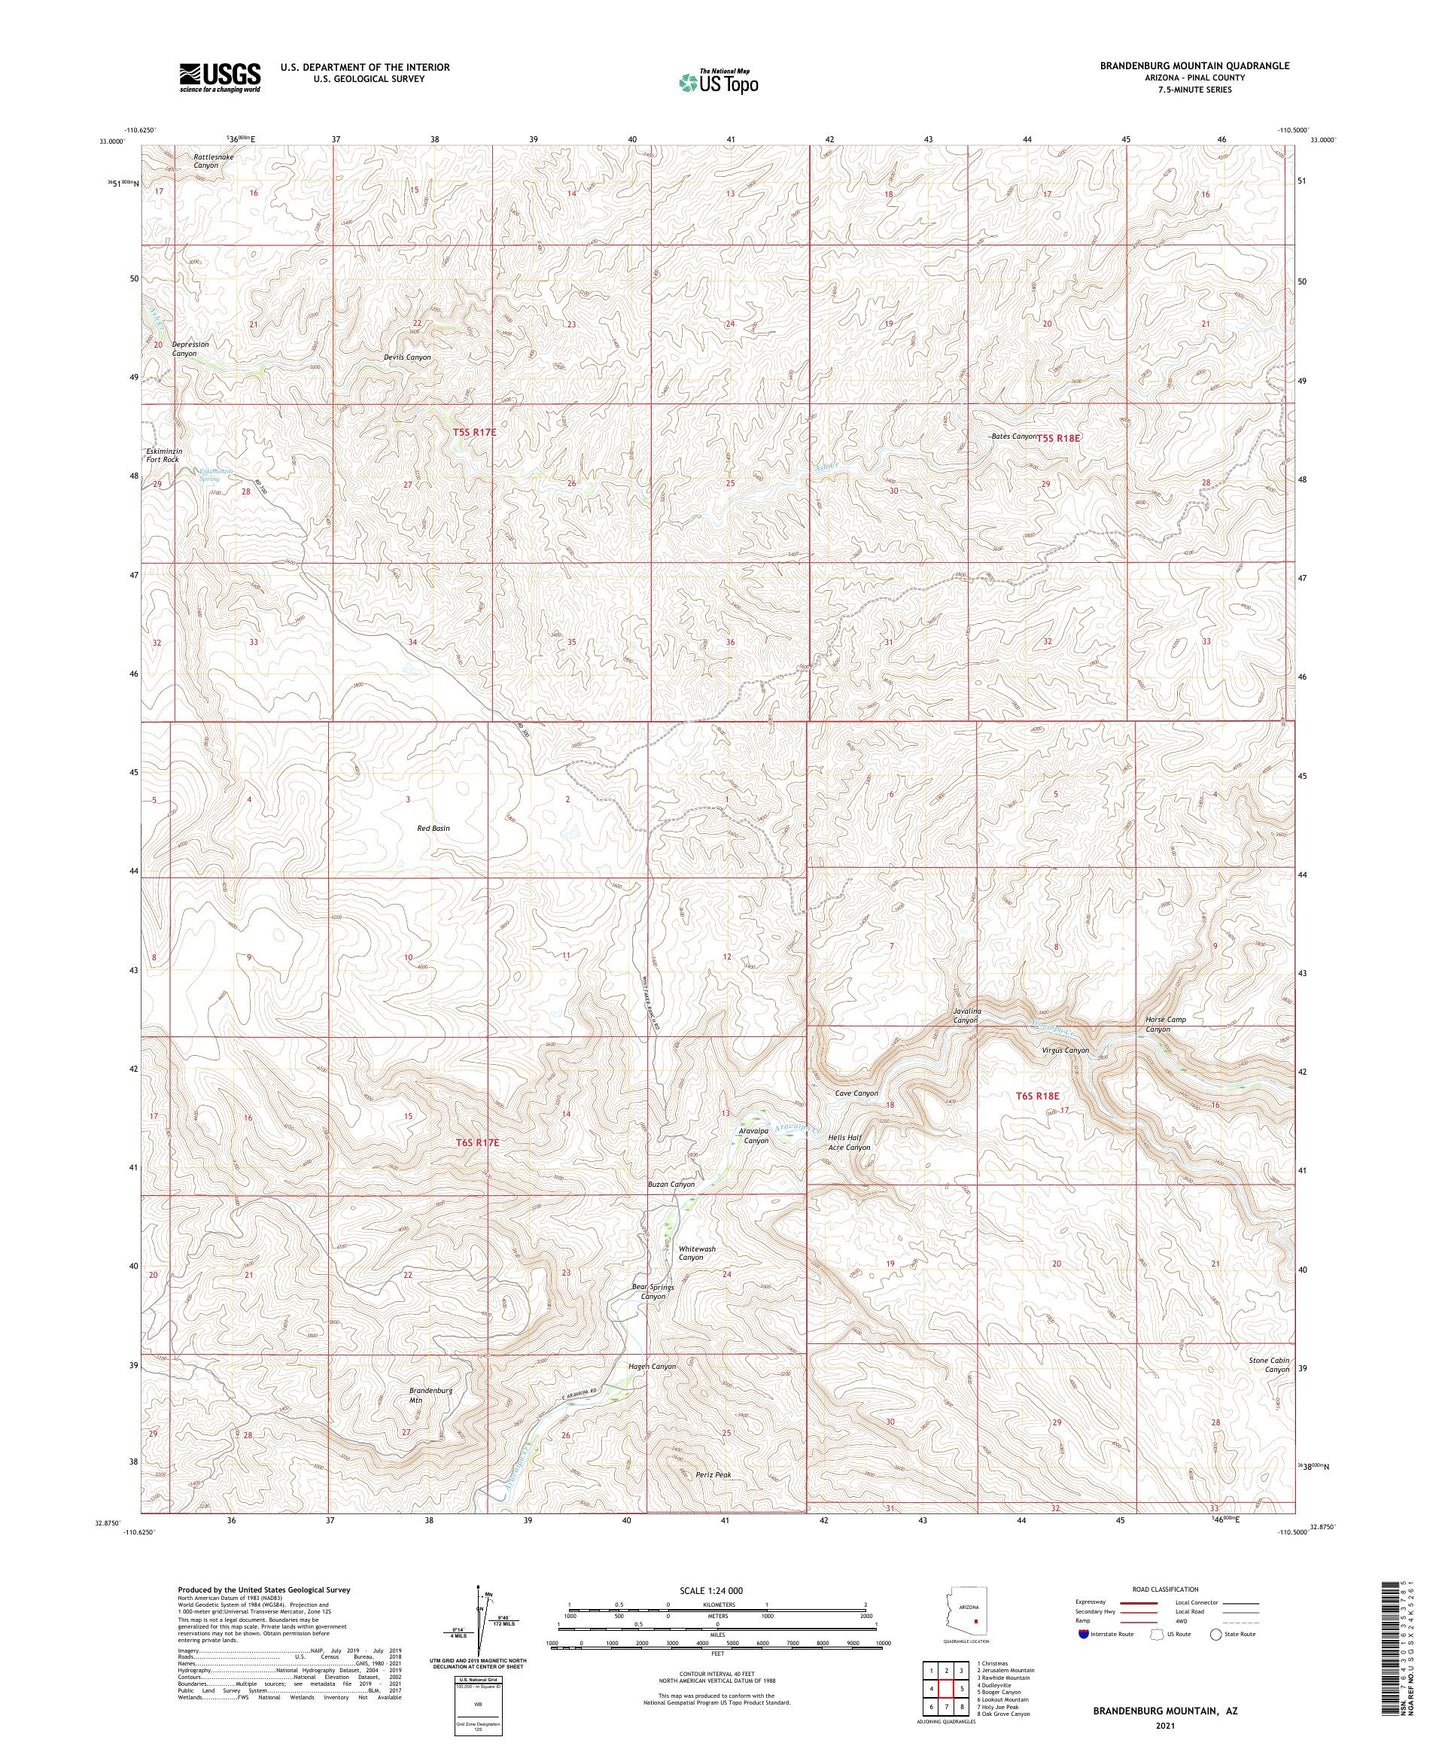 Brandenburg Mountain Arizona US Topo Map Image